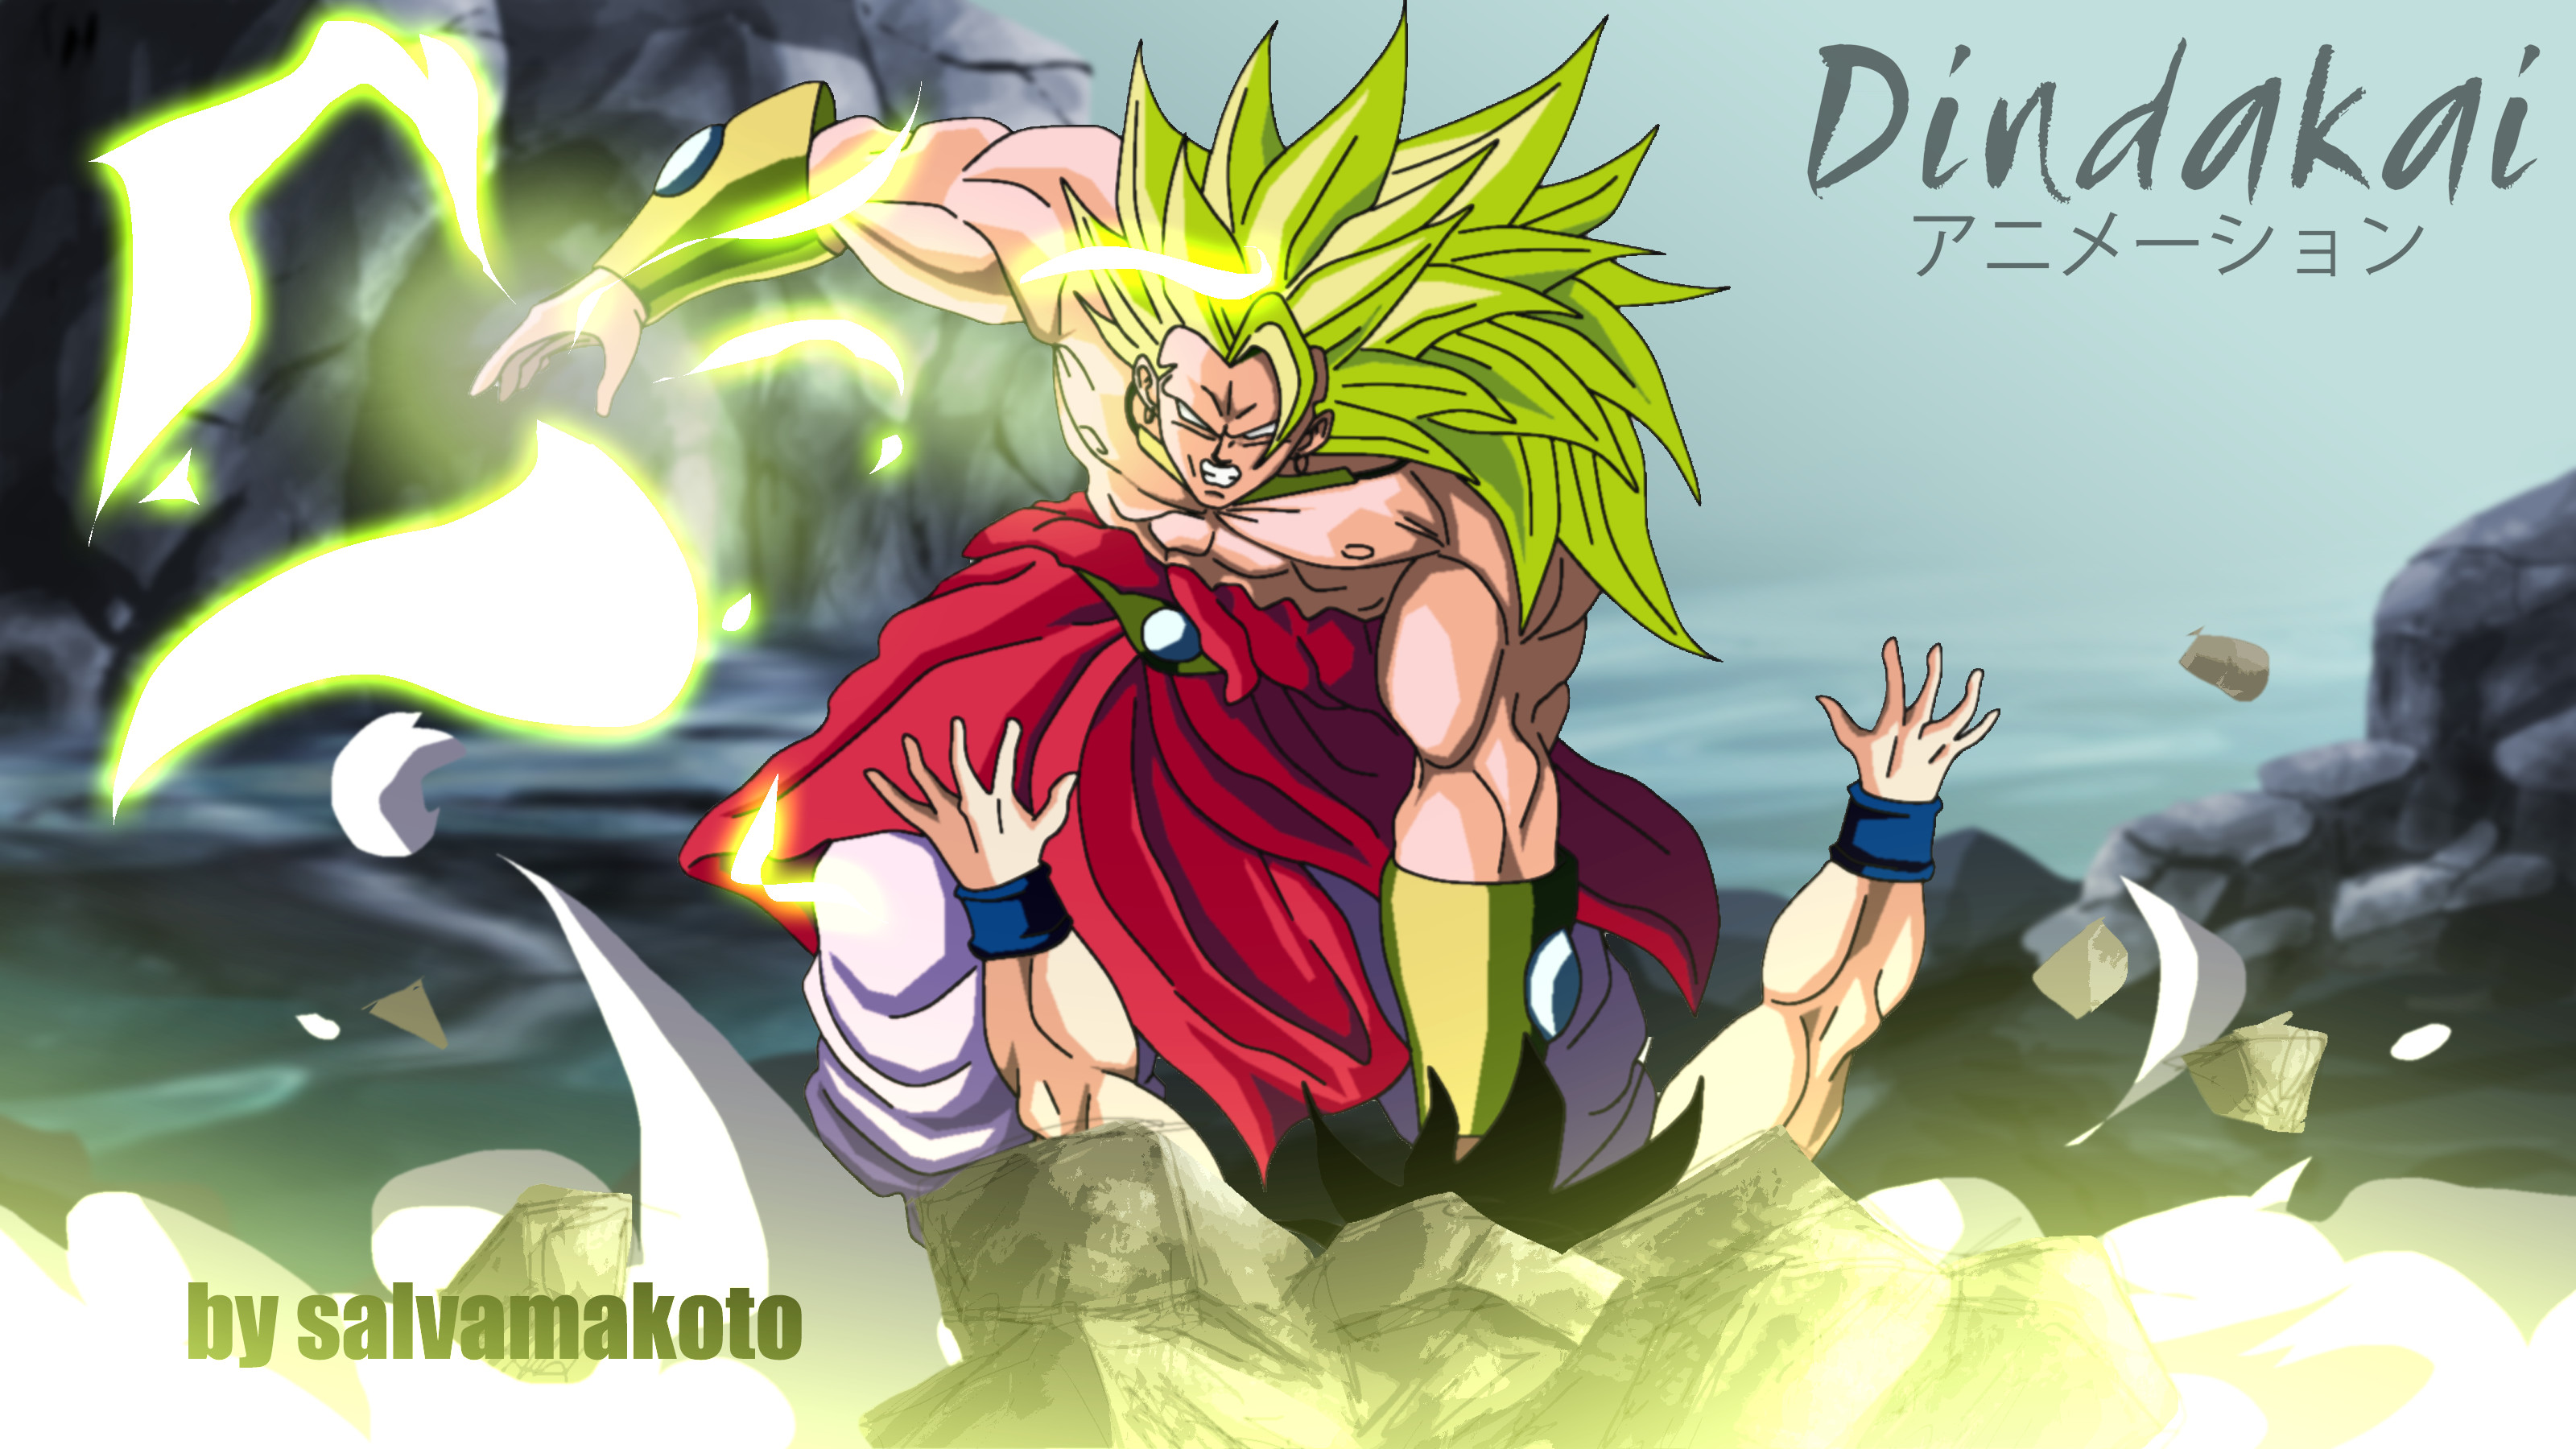 3200x1800 Broly ss3 vs Goku by dindakai